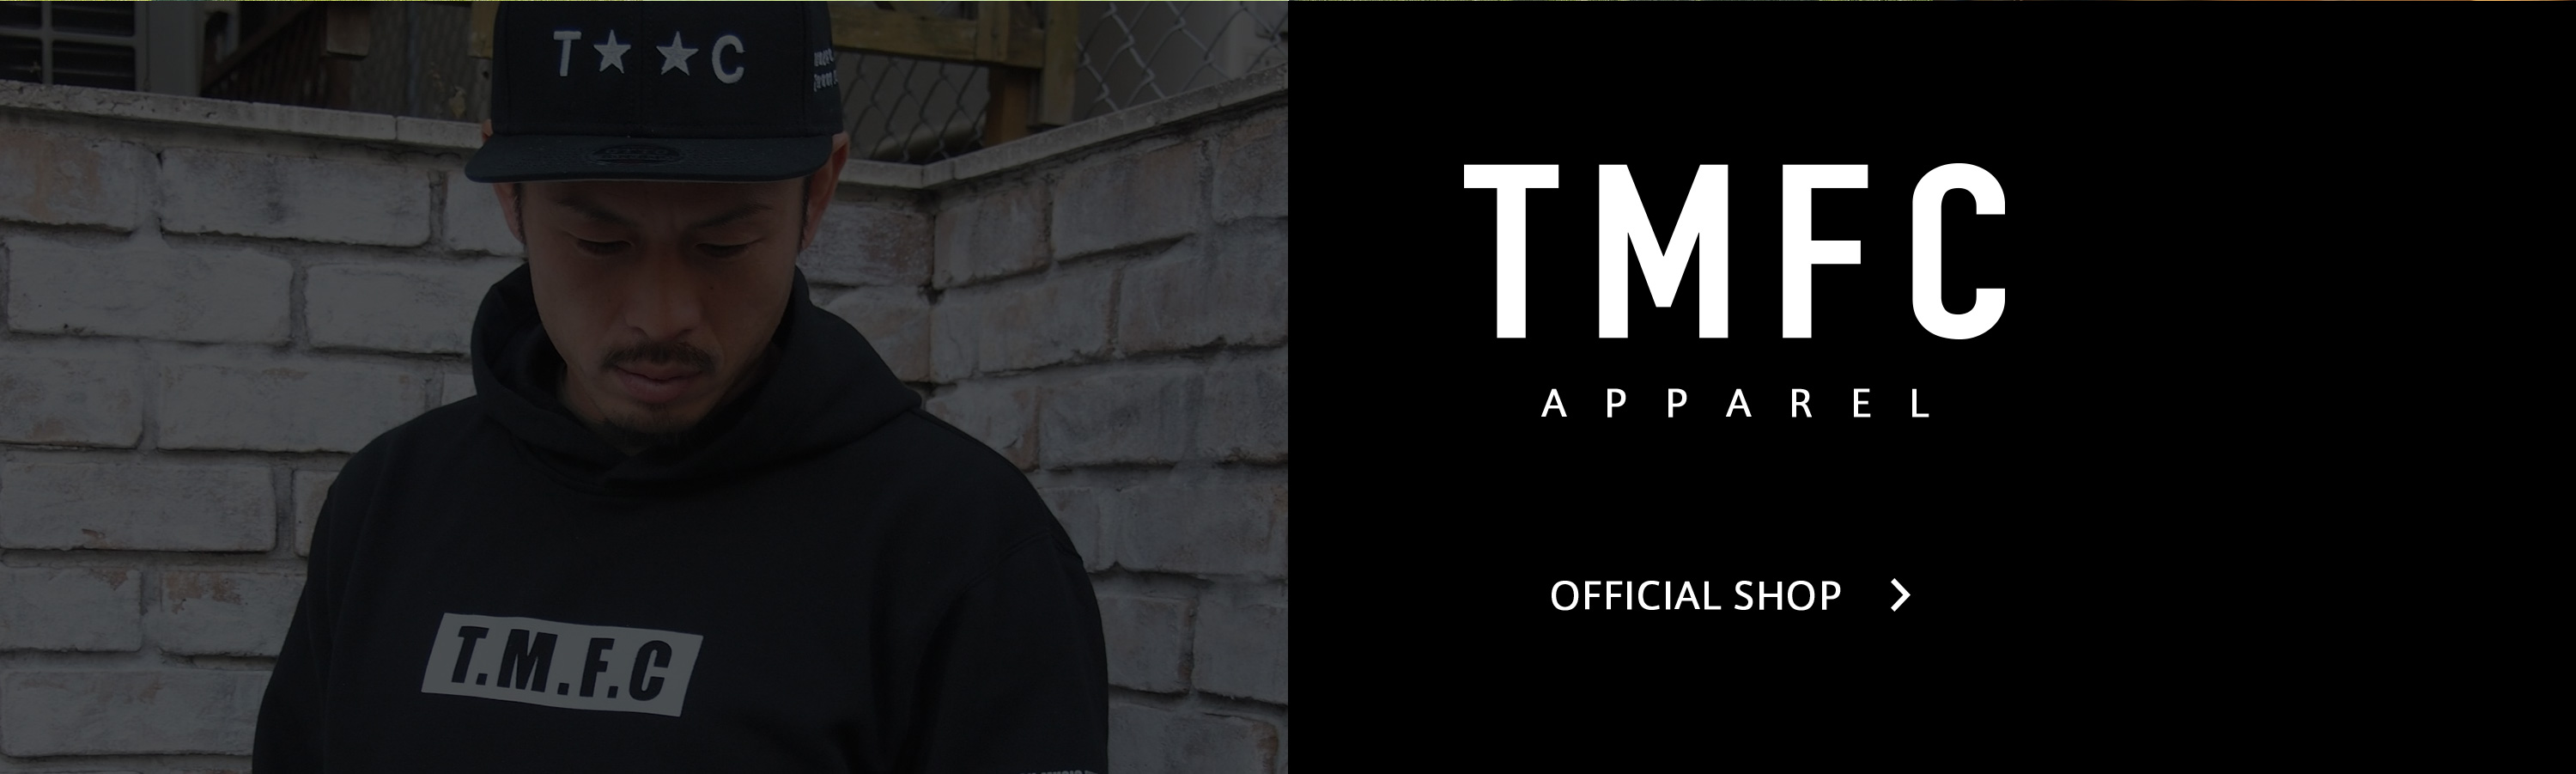 TMFC APPAREL OFFICIAL SHOP